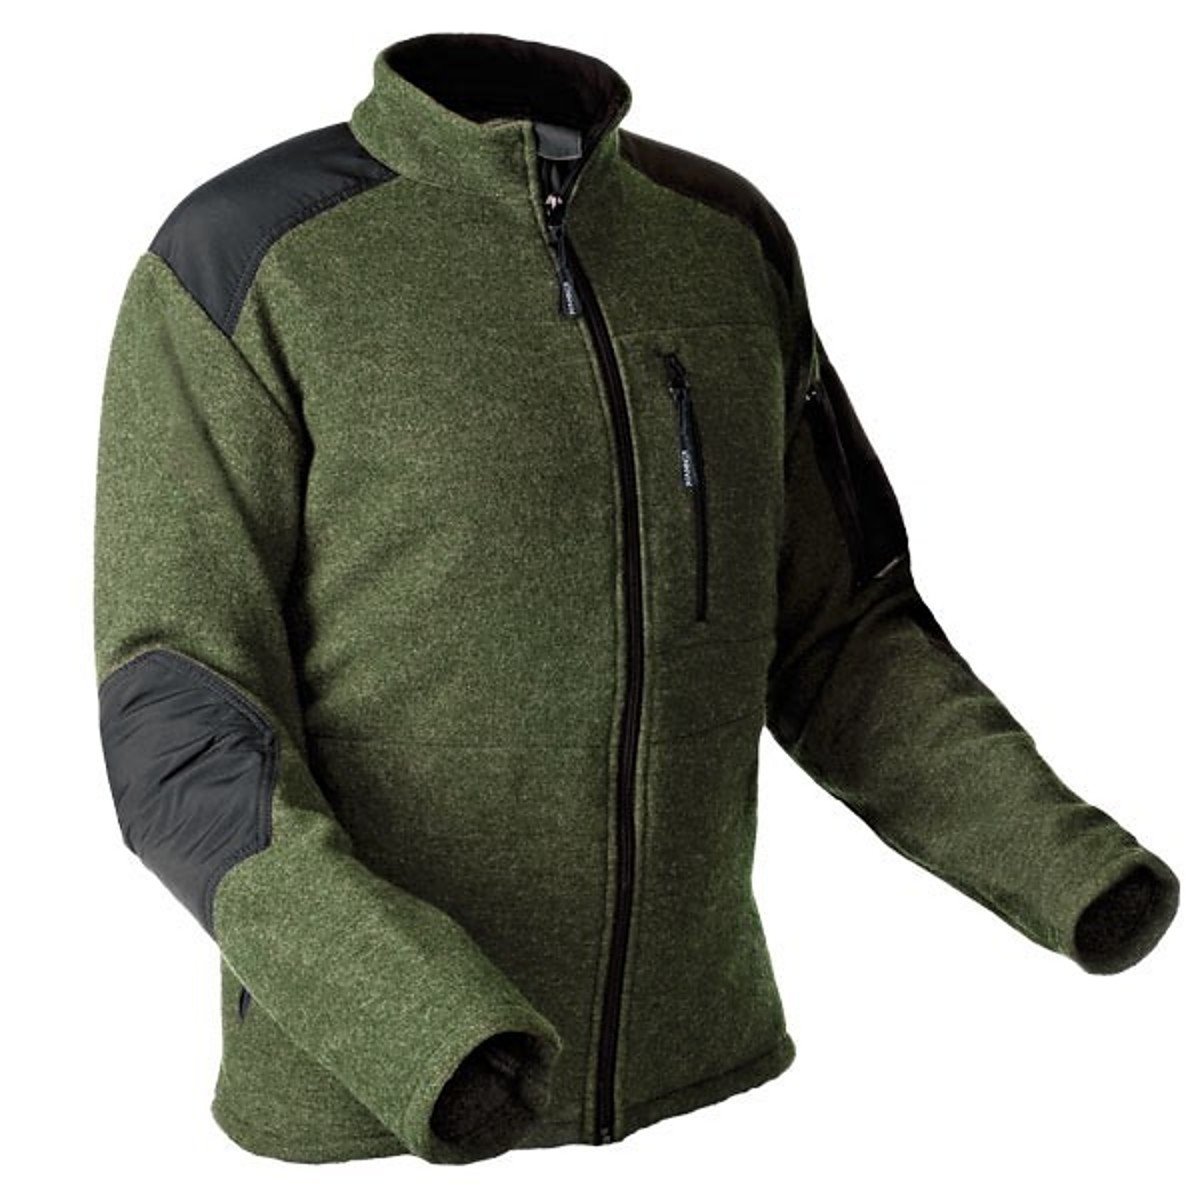 Pfanner warme Wooltec Jacke aus Merinowolle, Farbe:oliv, Größe:XL